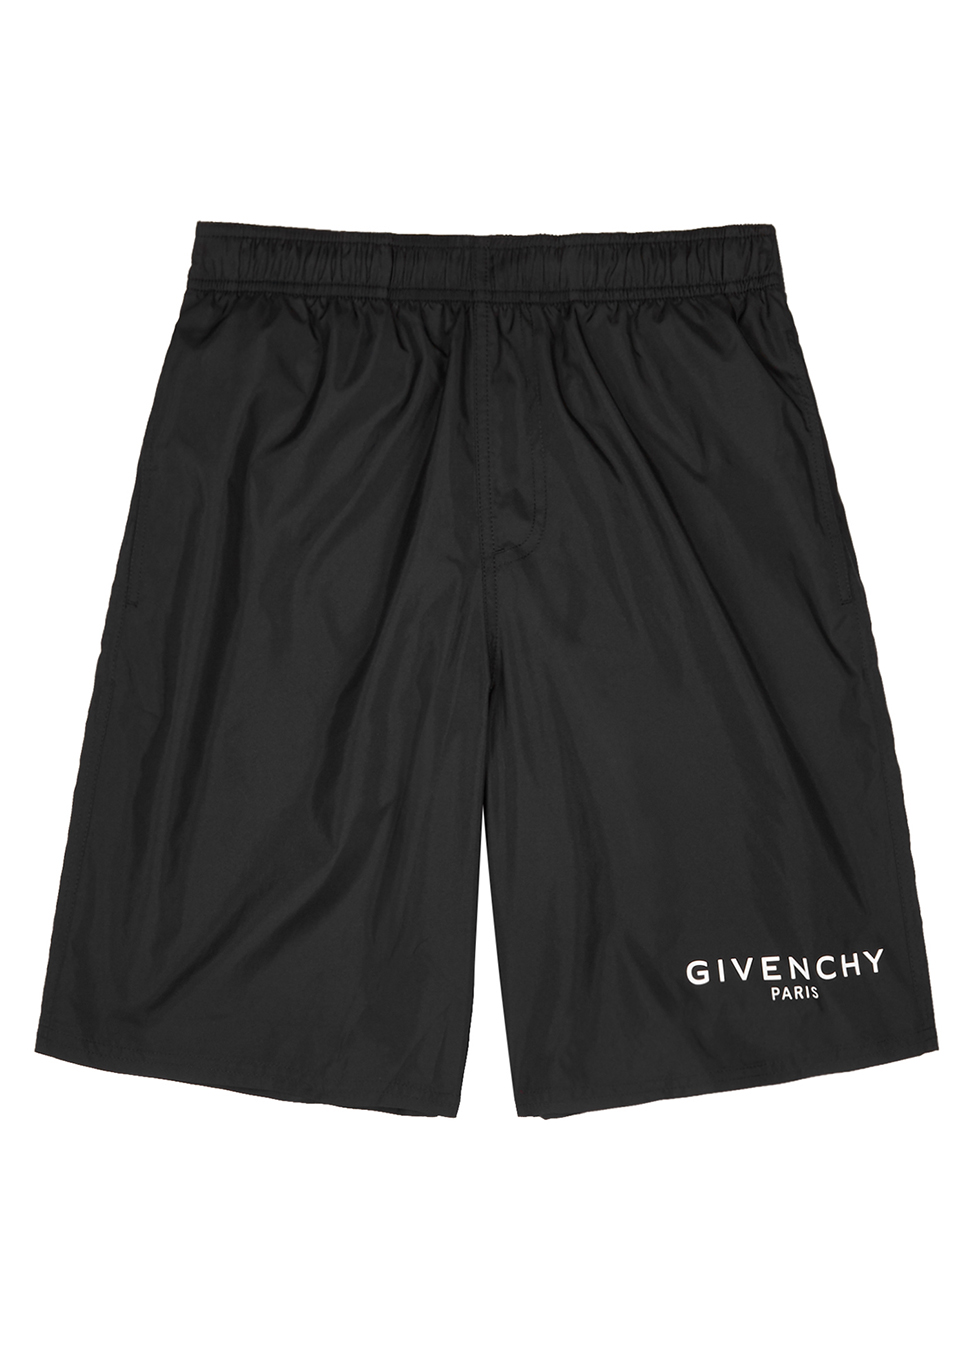 givenchy paris shorts